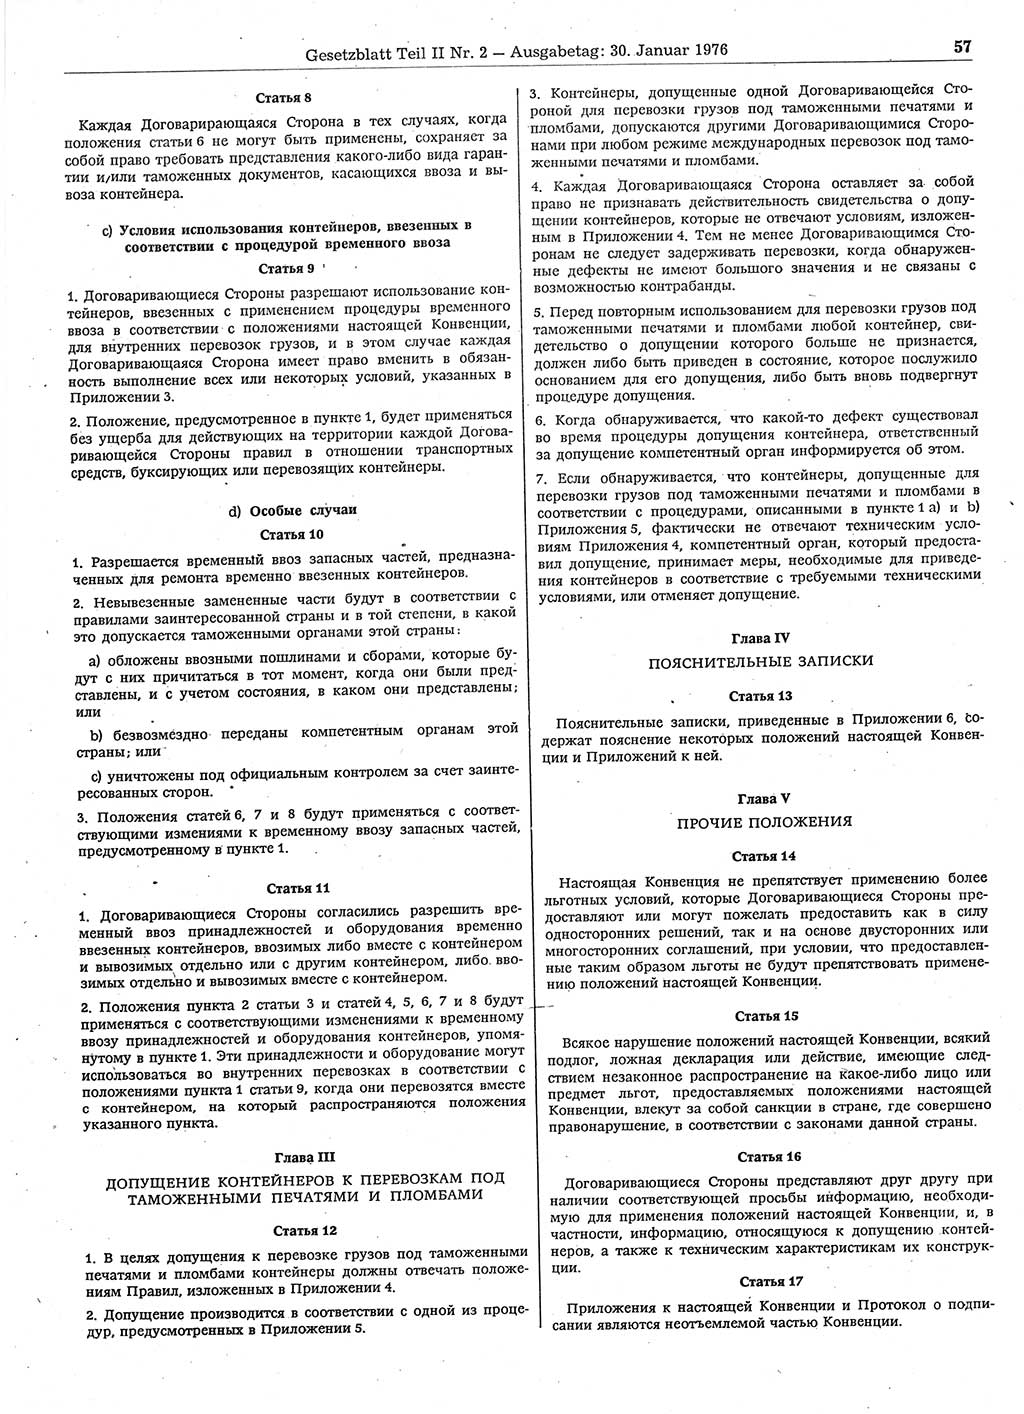 Gesetzblatt (GBl.) der Deutschen Demokratischen Republik (DDR) Teil ⅠⅠ 1976, Seite 57 (GBl. DDR ⅠⅠ 1976, S. 57)